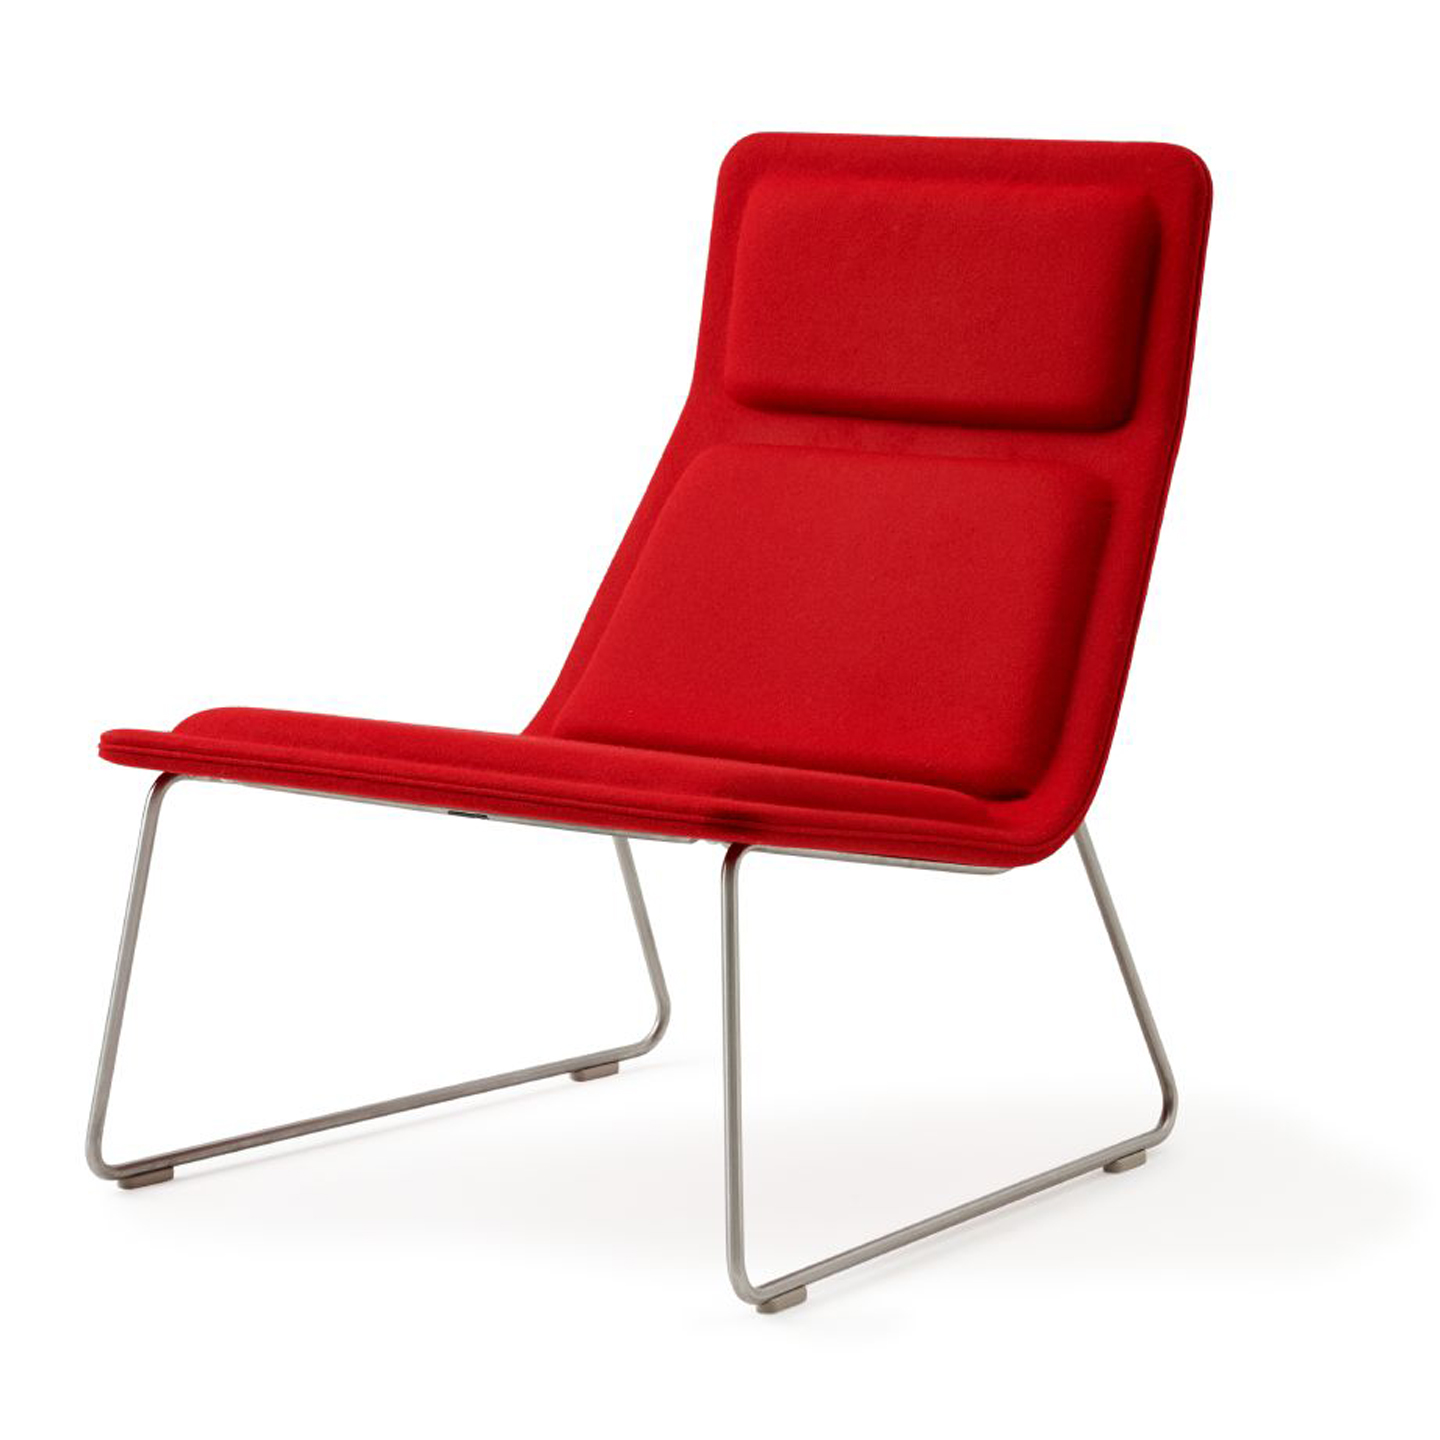 See Haworth Low Pad Lounge Chair